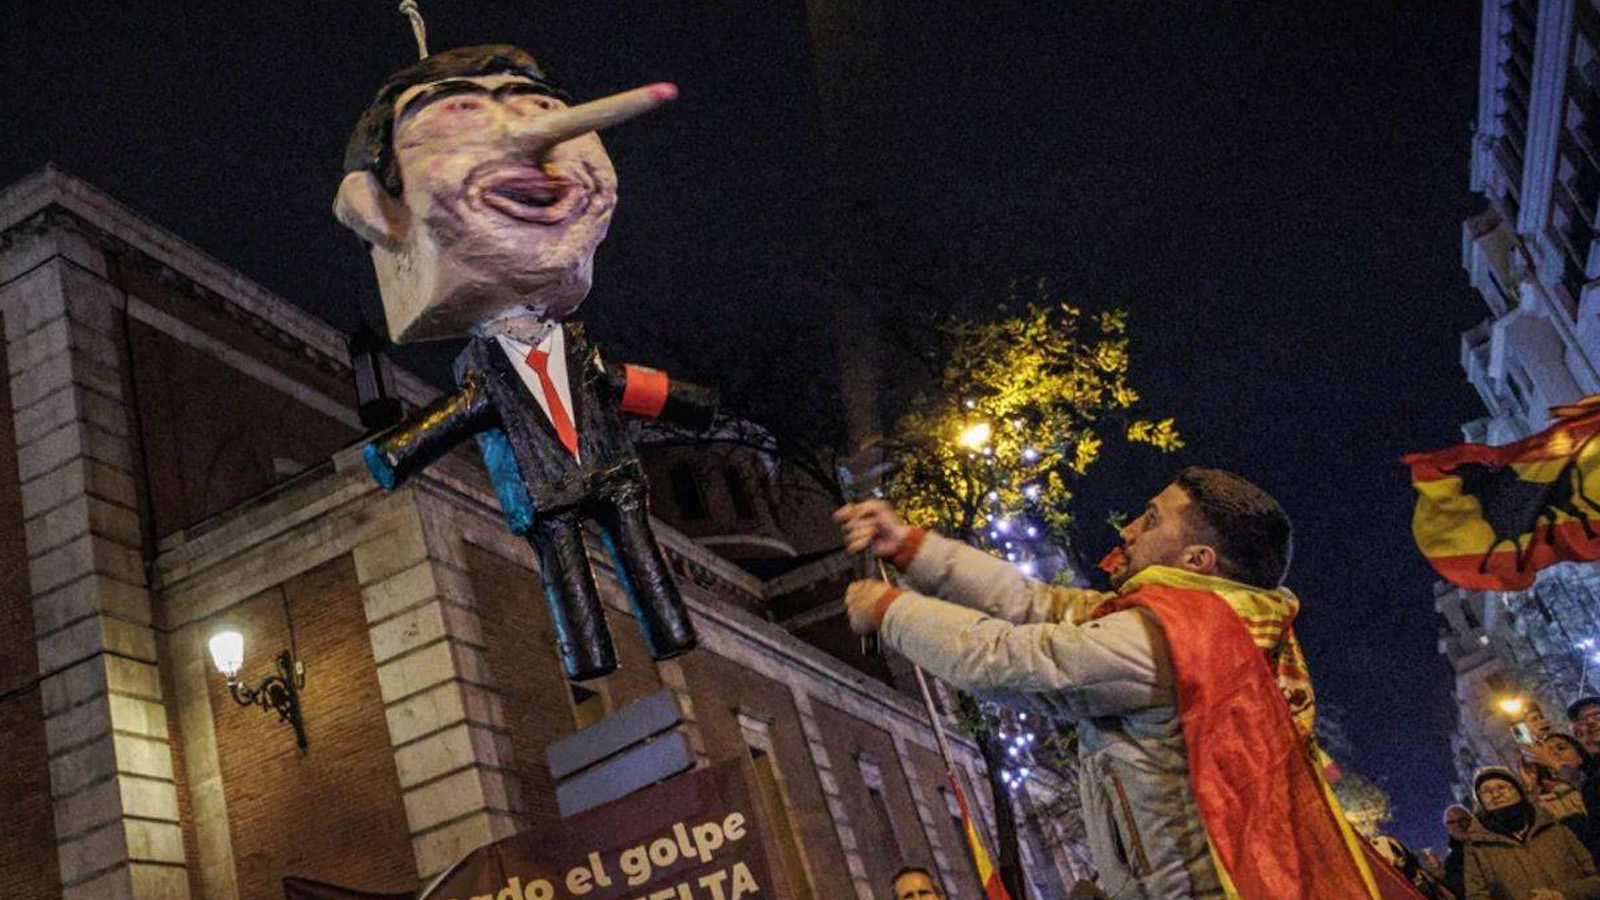 التمثال الذي شنقته المعارضة أمام مقر الحزب الاشتراكي في إسبانيا(منصة x)